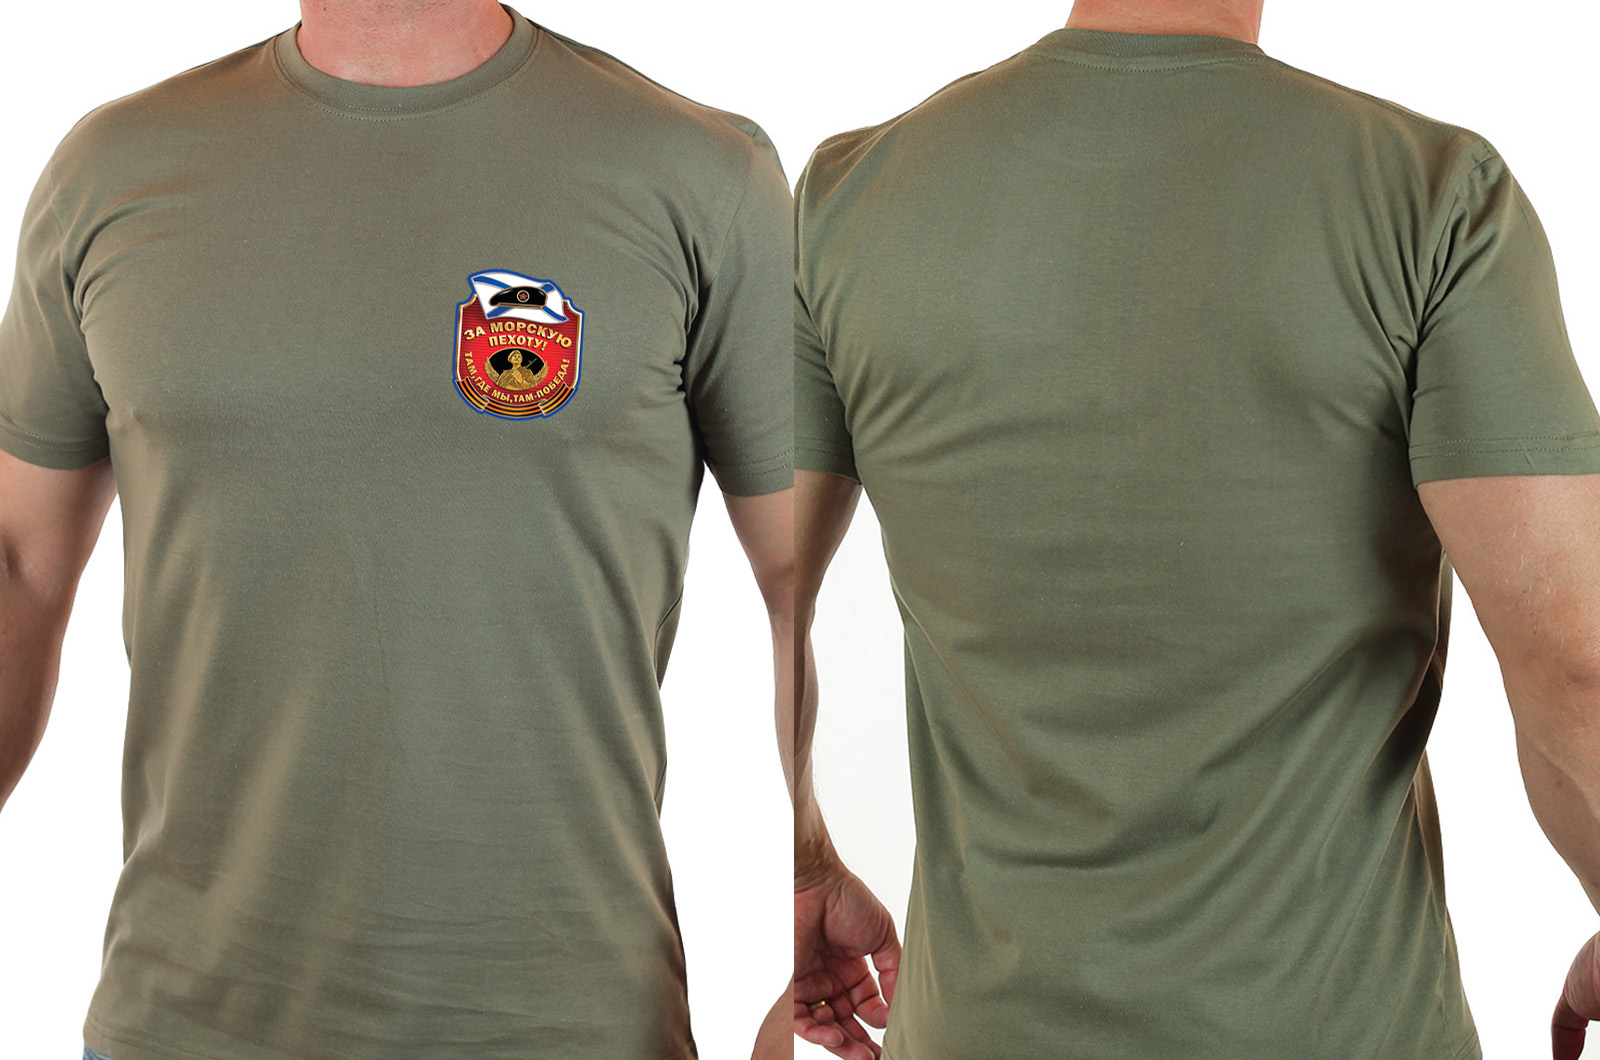 Правильная мужская футболка «Горжусь службой в Морской Пехоте». 